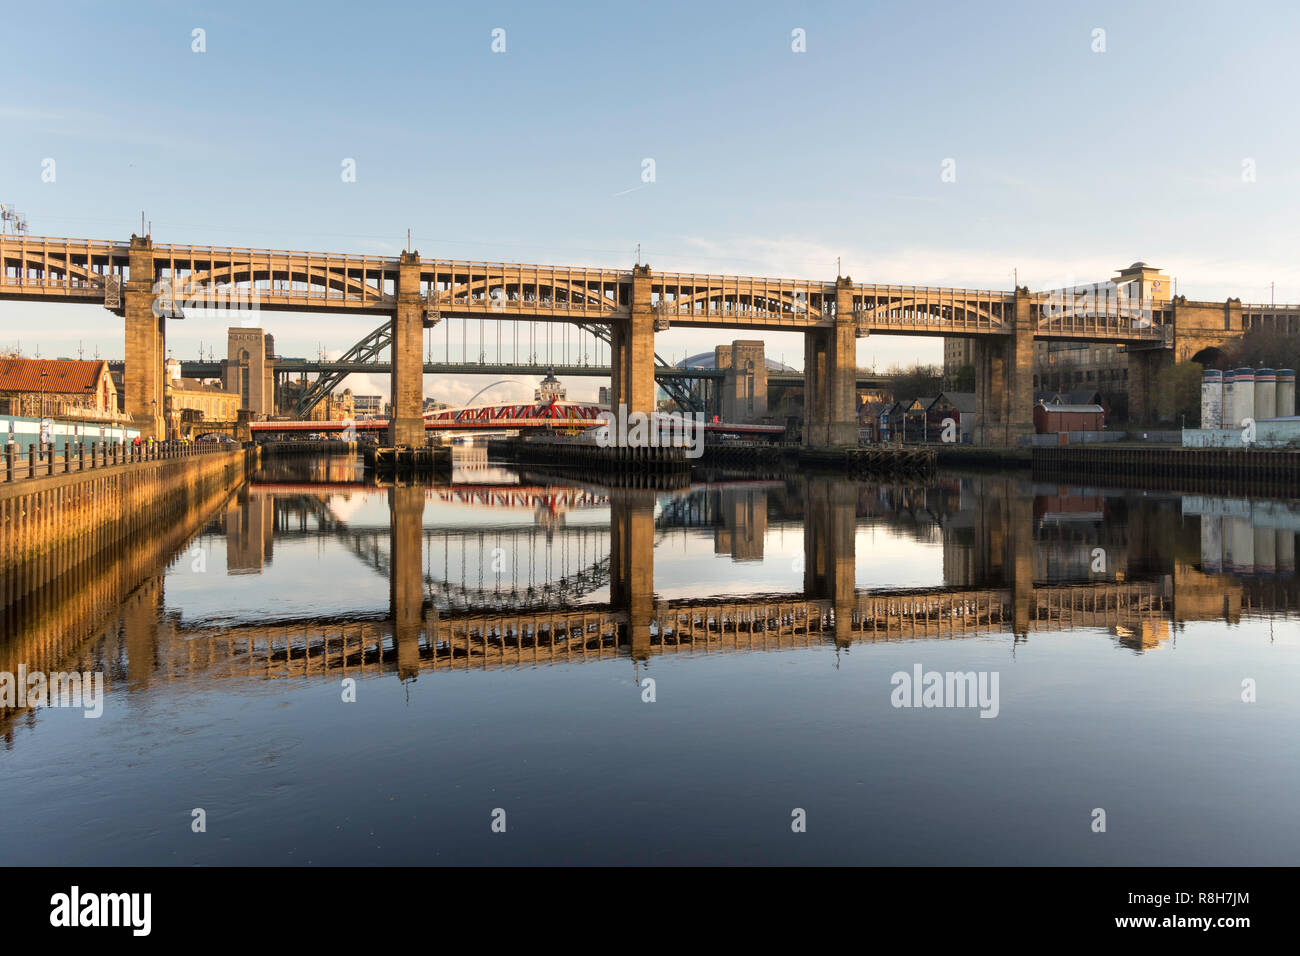 Le High Level Bridge et ponts Tyne reflète dans la rivière, Newcastle upon Tyne, England, UK Banque D'Images